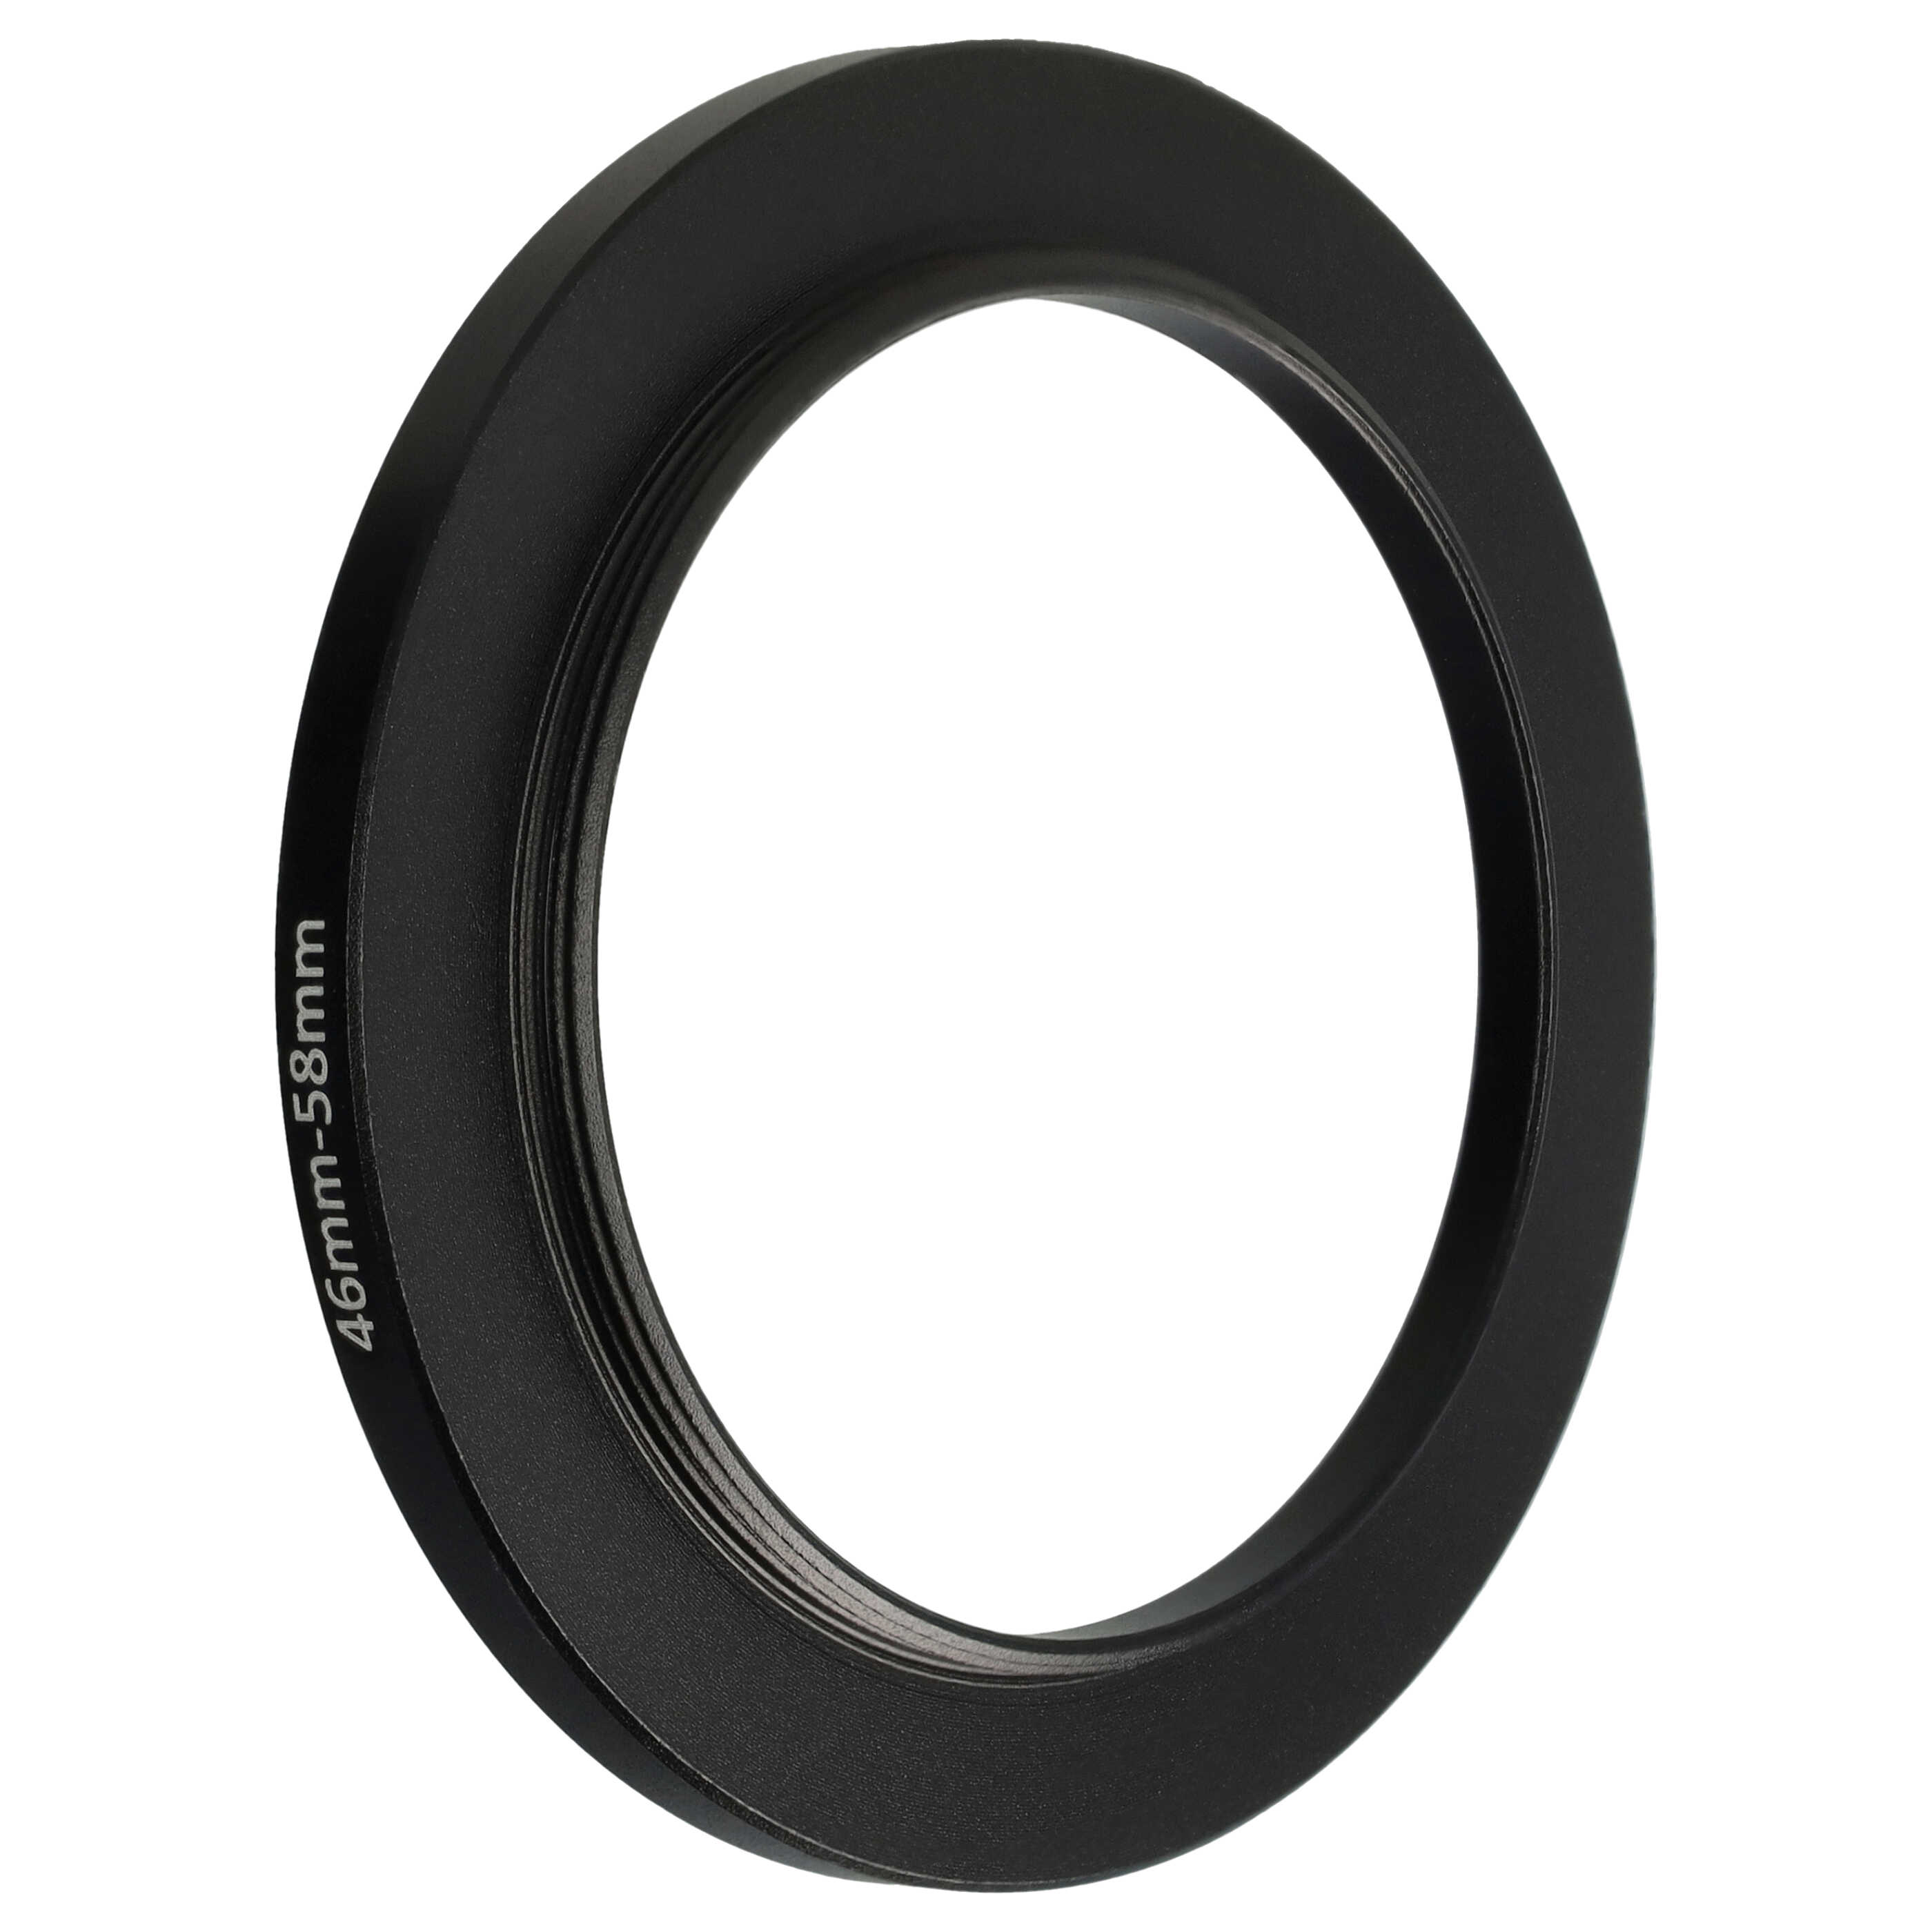 Step-Up-Ring Adapter 46 mm auf 58 mm passend für diverse Kamera-Objektive - Filteradapter